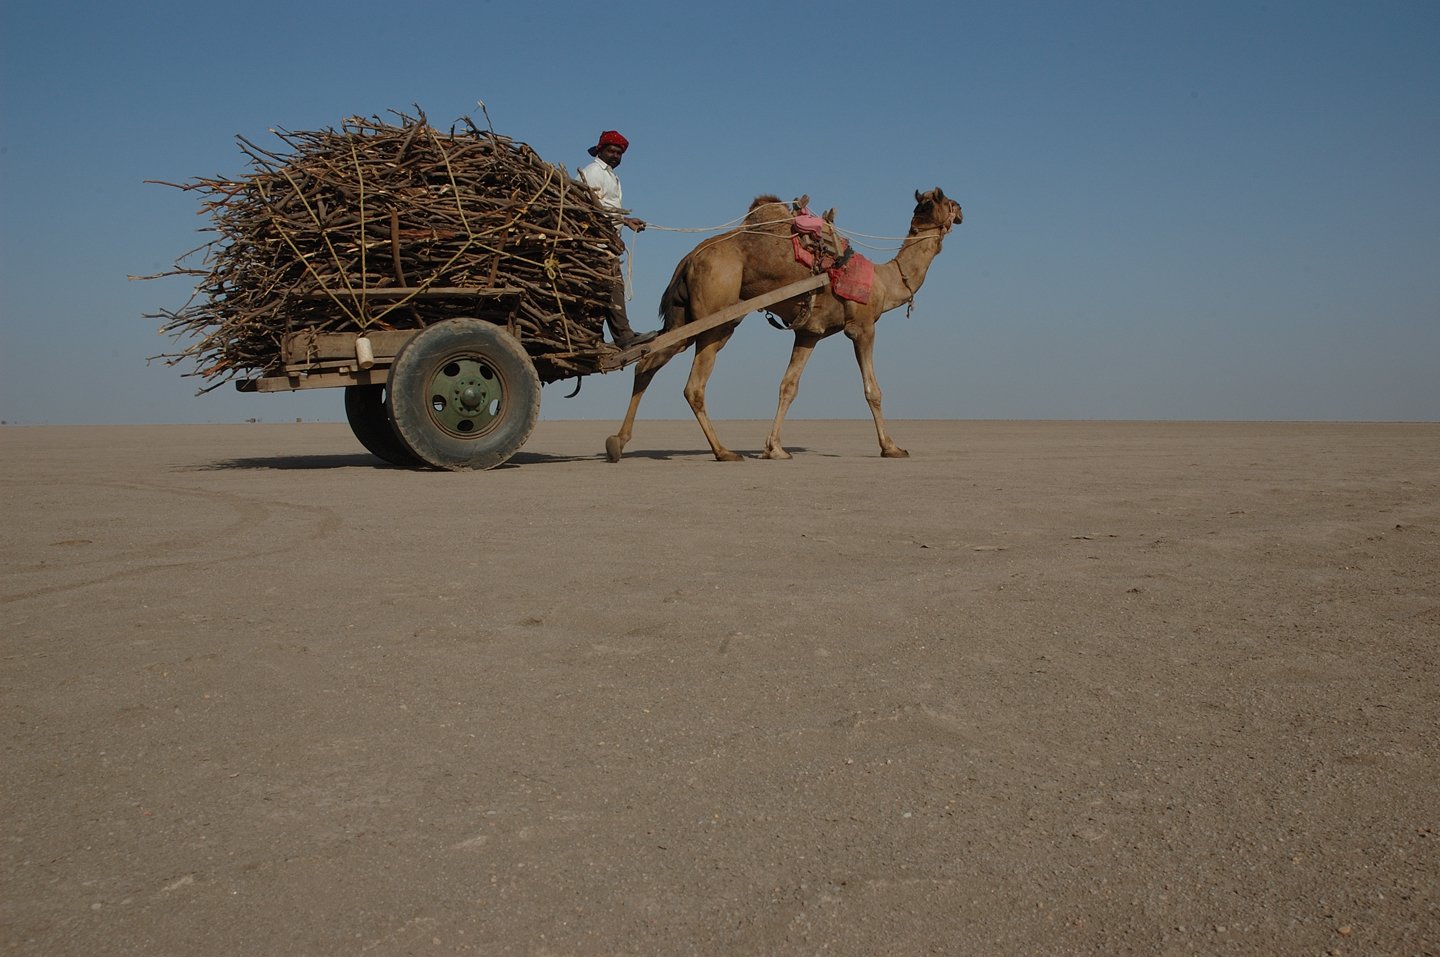 Едет караван. Гужевой транспорт верблюд. Верблюд в пустыне. Верблюд с повозкой. Верблюжья повозка.